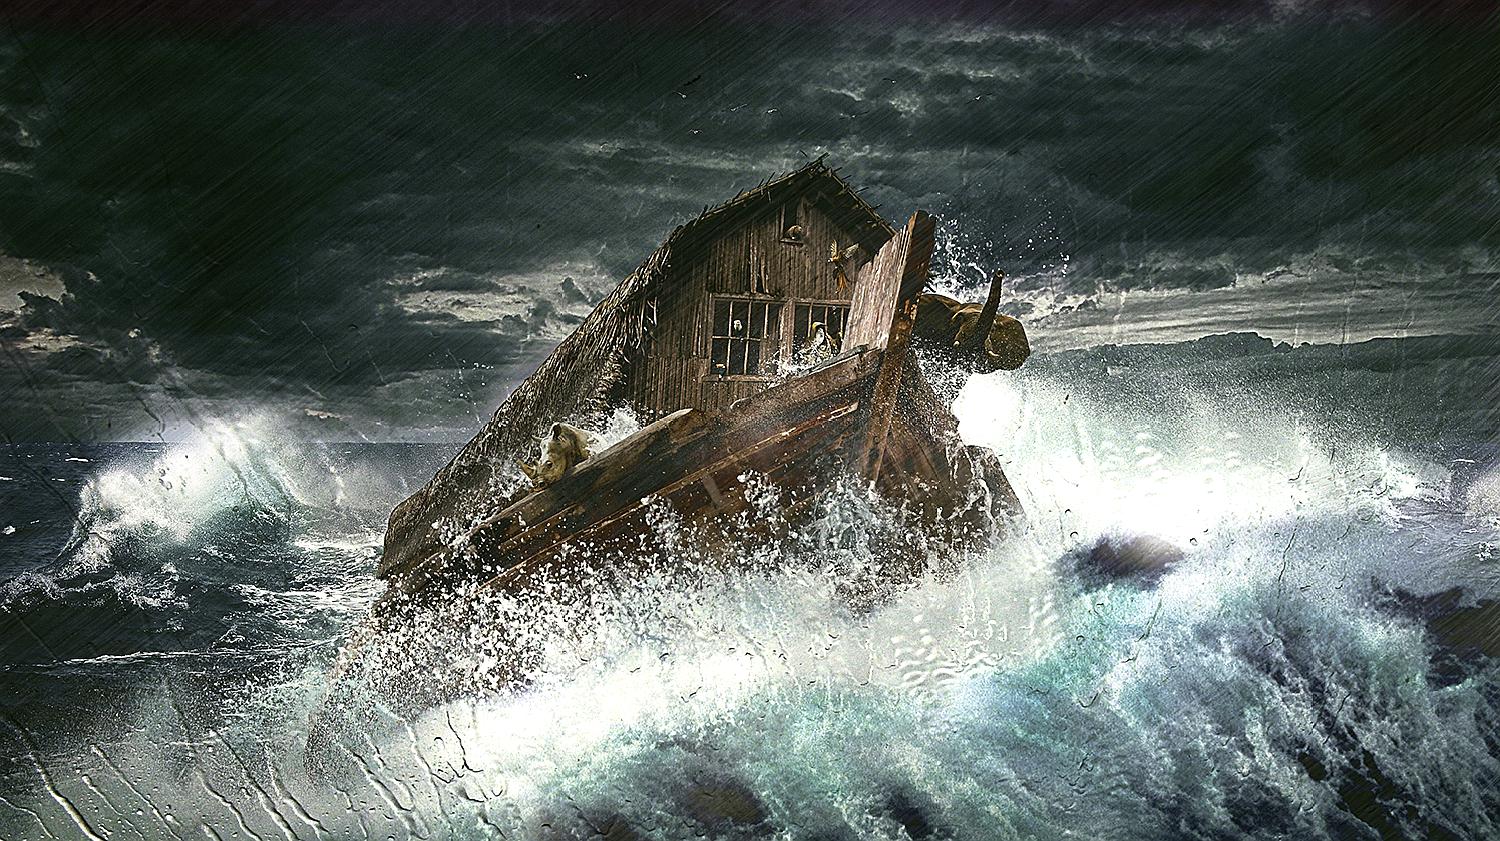 《圣经》中的诺亚方舟,探险队找到疑似残骸,能否证明它的存在